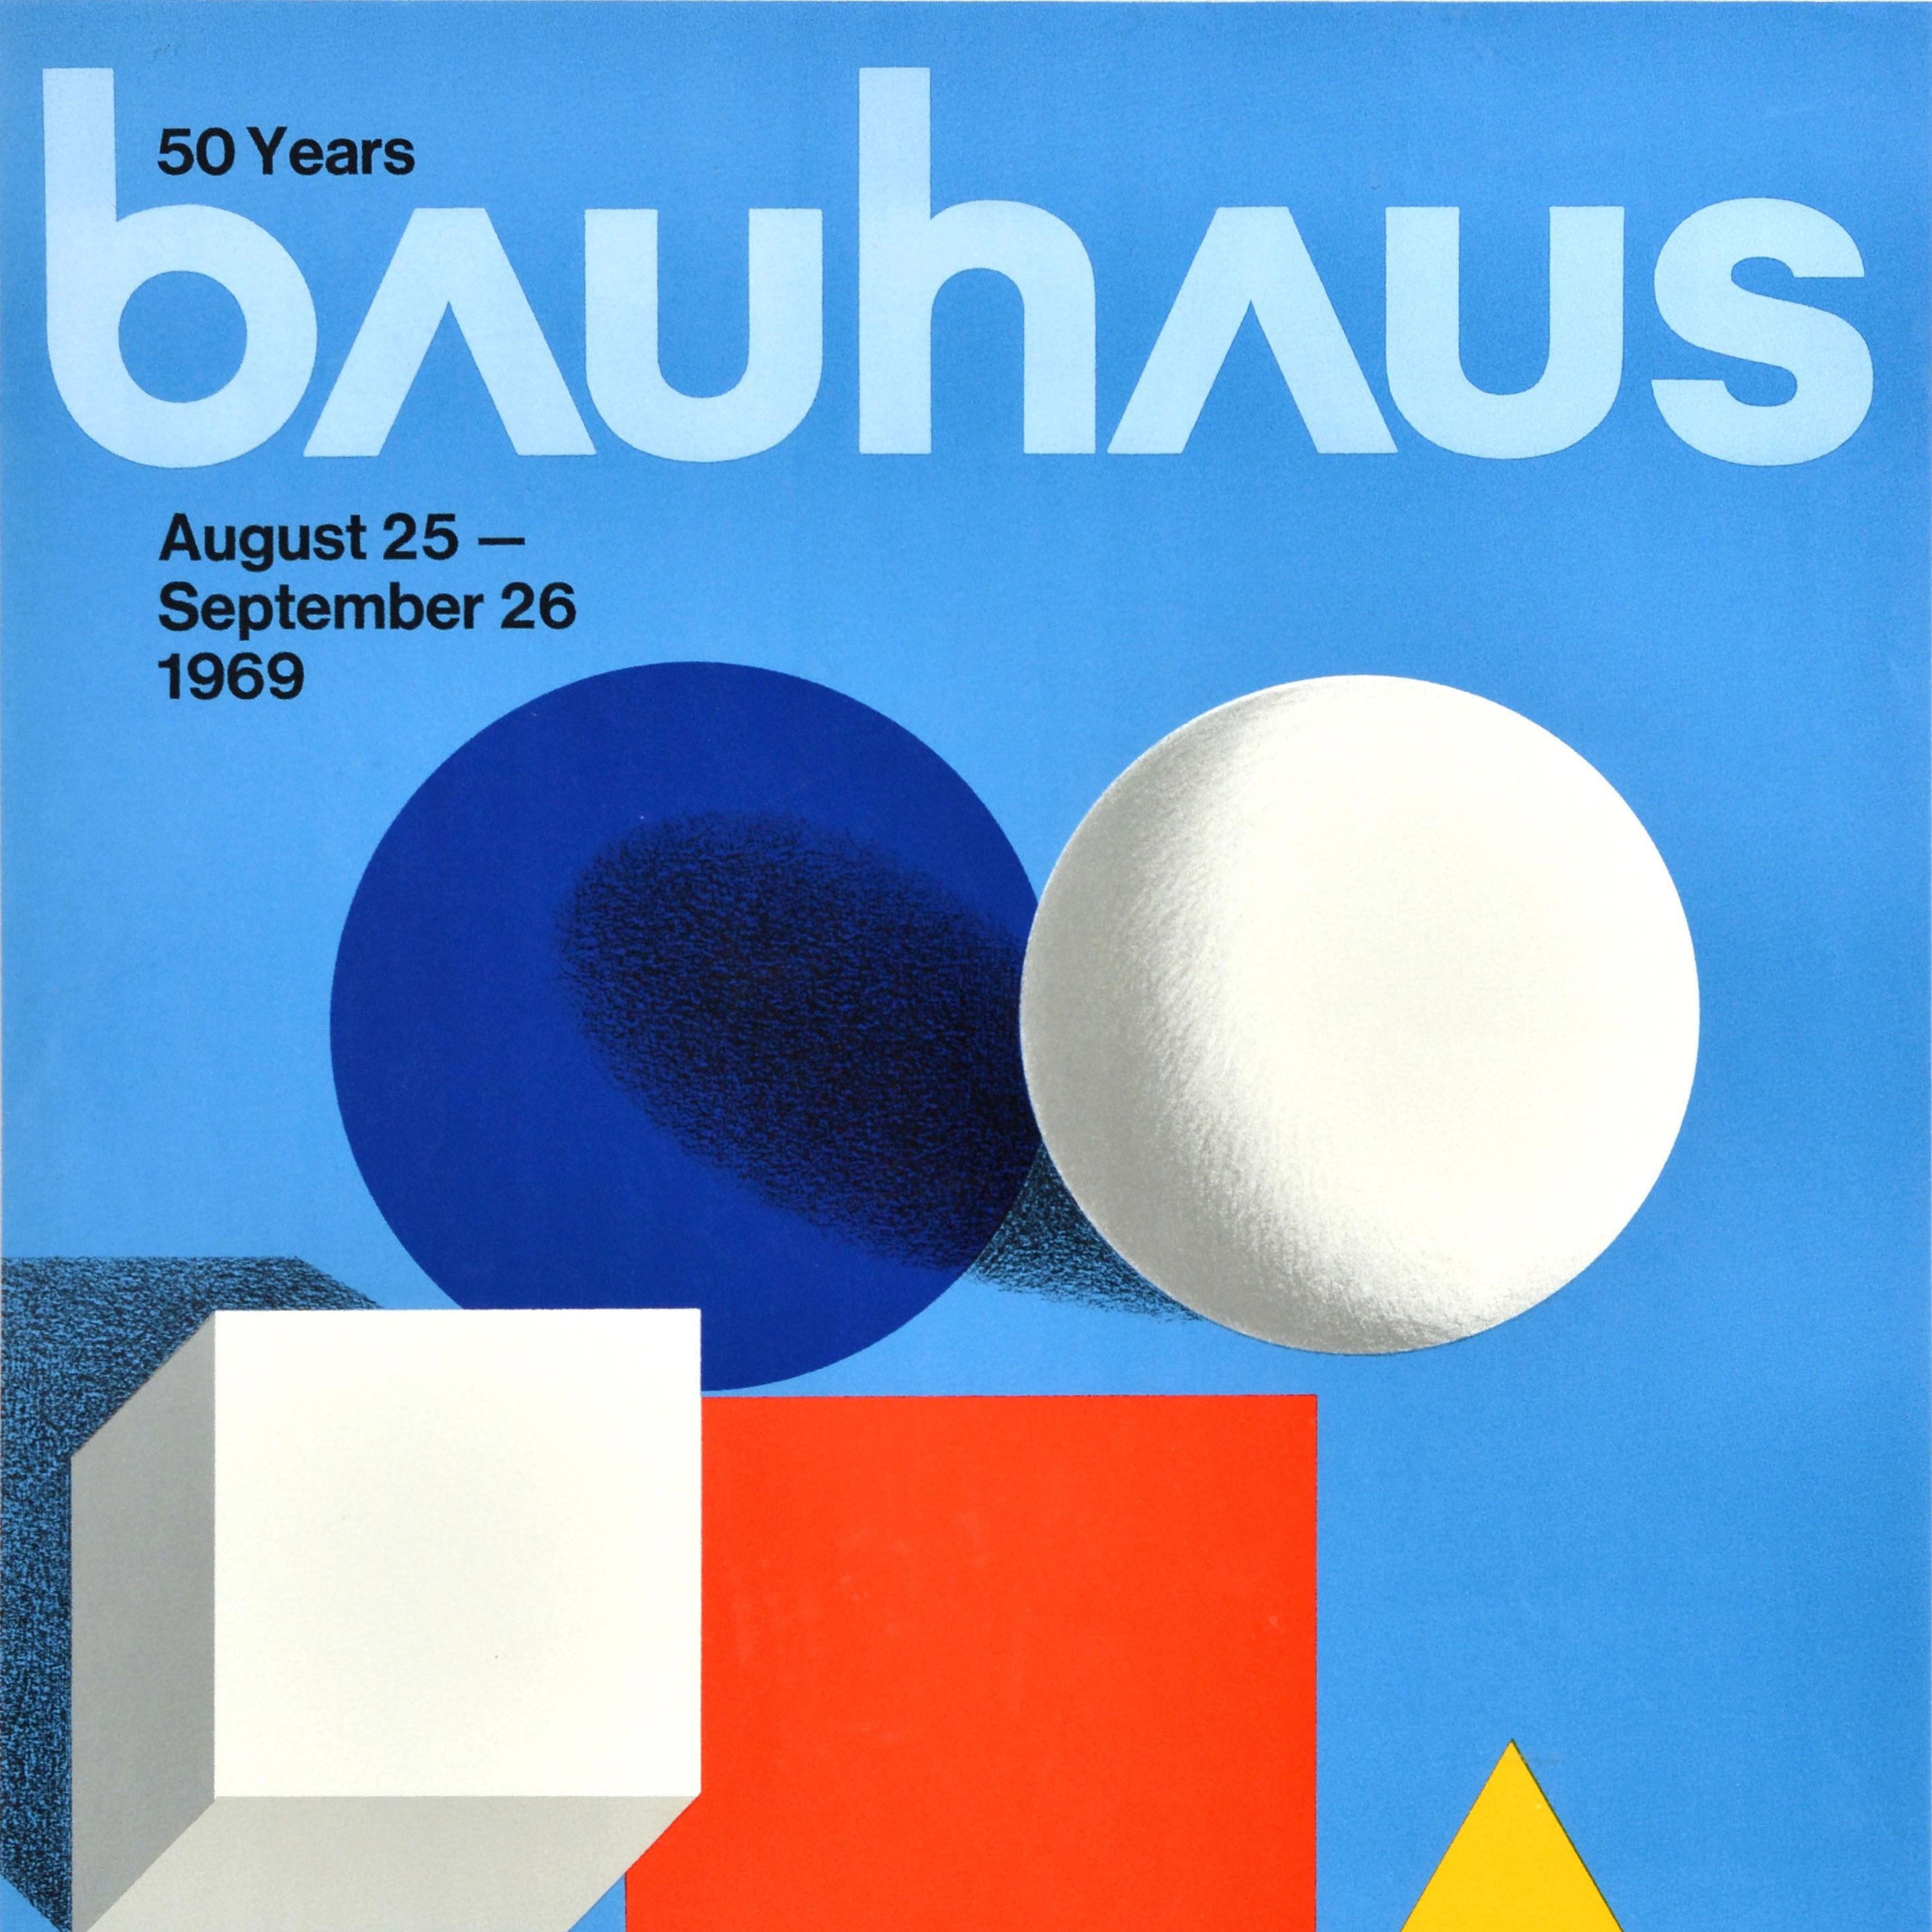 Affiche originale de l'exposition 50 Years Bauhaus qui s'est tenue du 25 août au 26 septembre 1969 à la S.R. Crown Hall Illinois Institute of Technology Chicago (IIT Illinois Tech ; fondé en 1890) présentant une composition minimaliste comprenant un